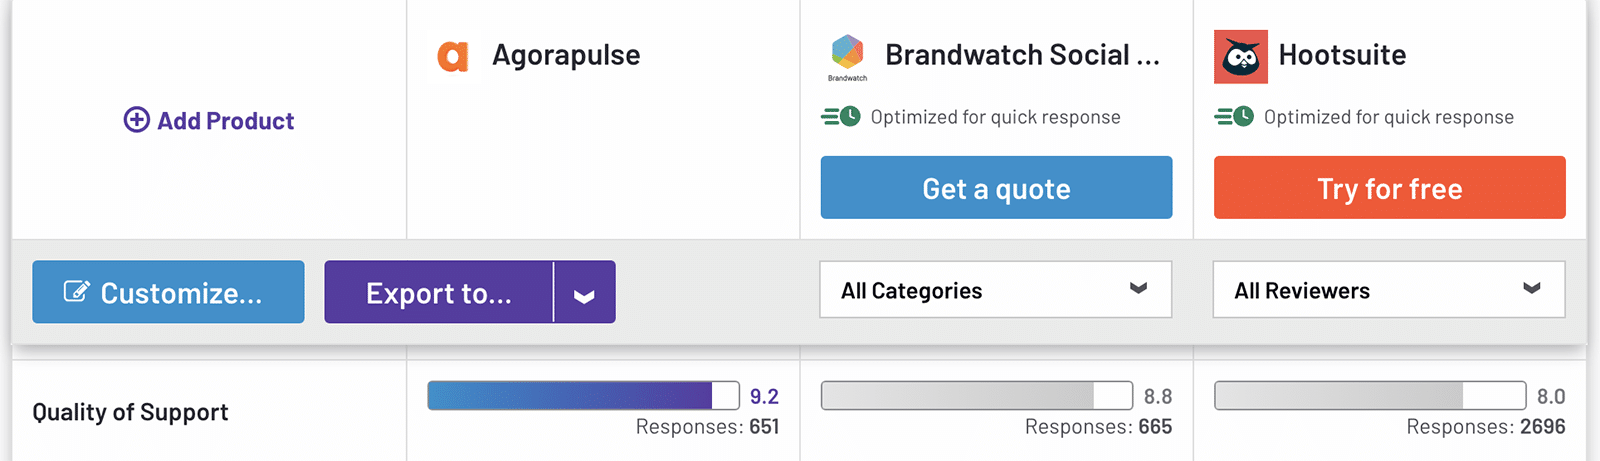 Comparaison G2 Agorapulse, Brandwatch, et Hootsuite support client